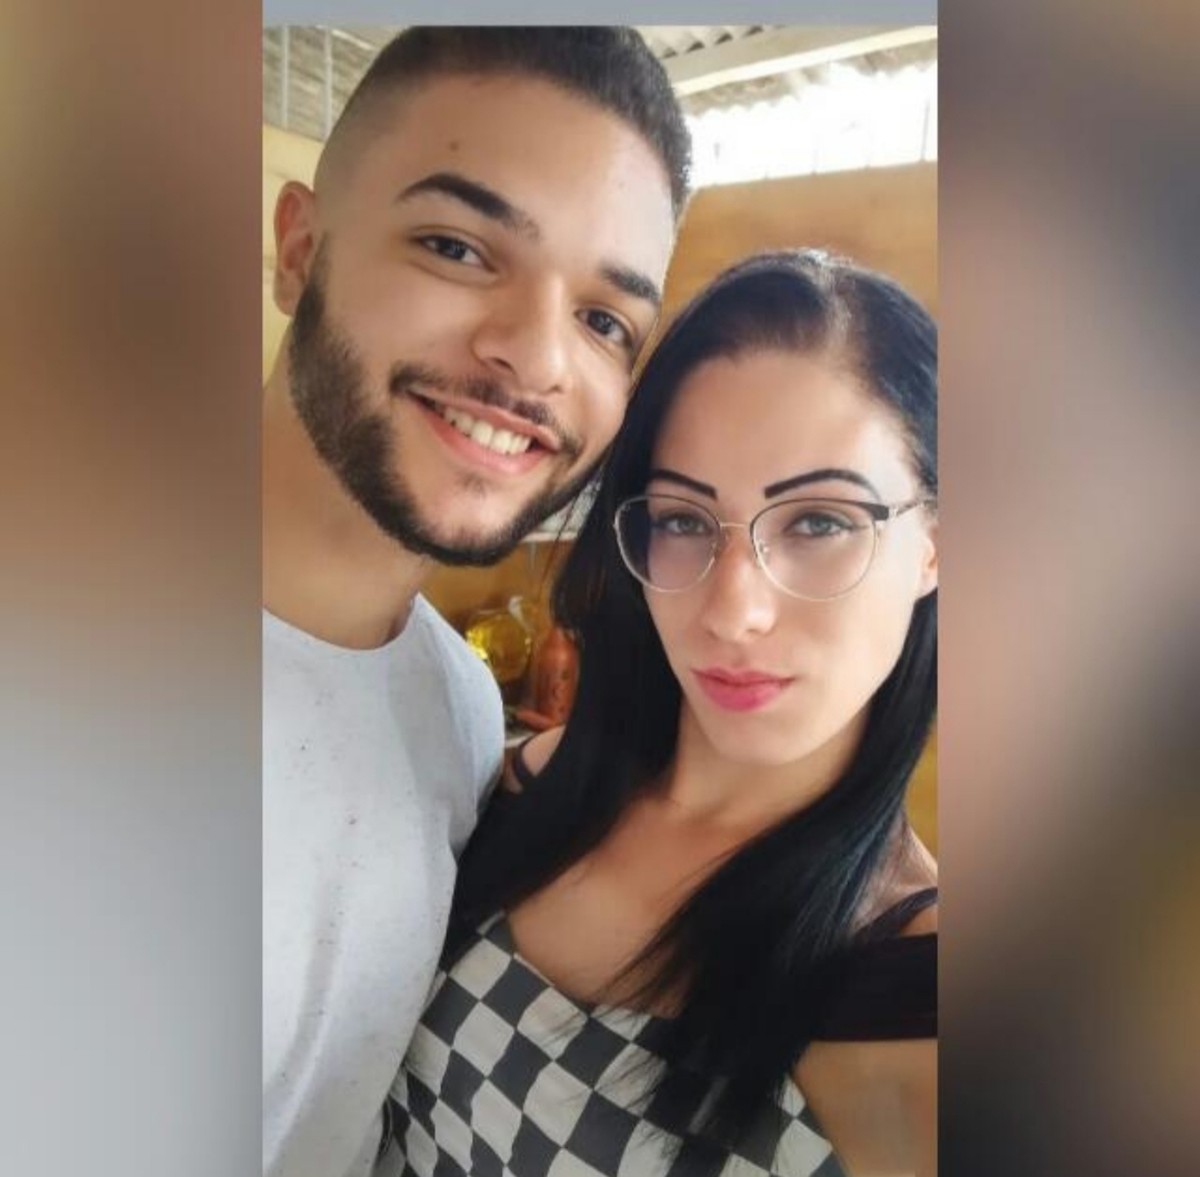 La justice ordonne la détention préventive du suspect d’avoir poignardé sa sœur trans et son petit ami à Franca |  Ribeirao Preto et Franca